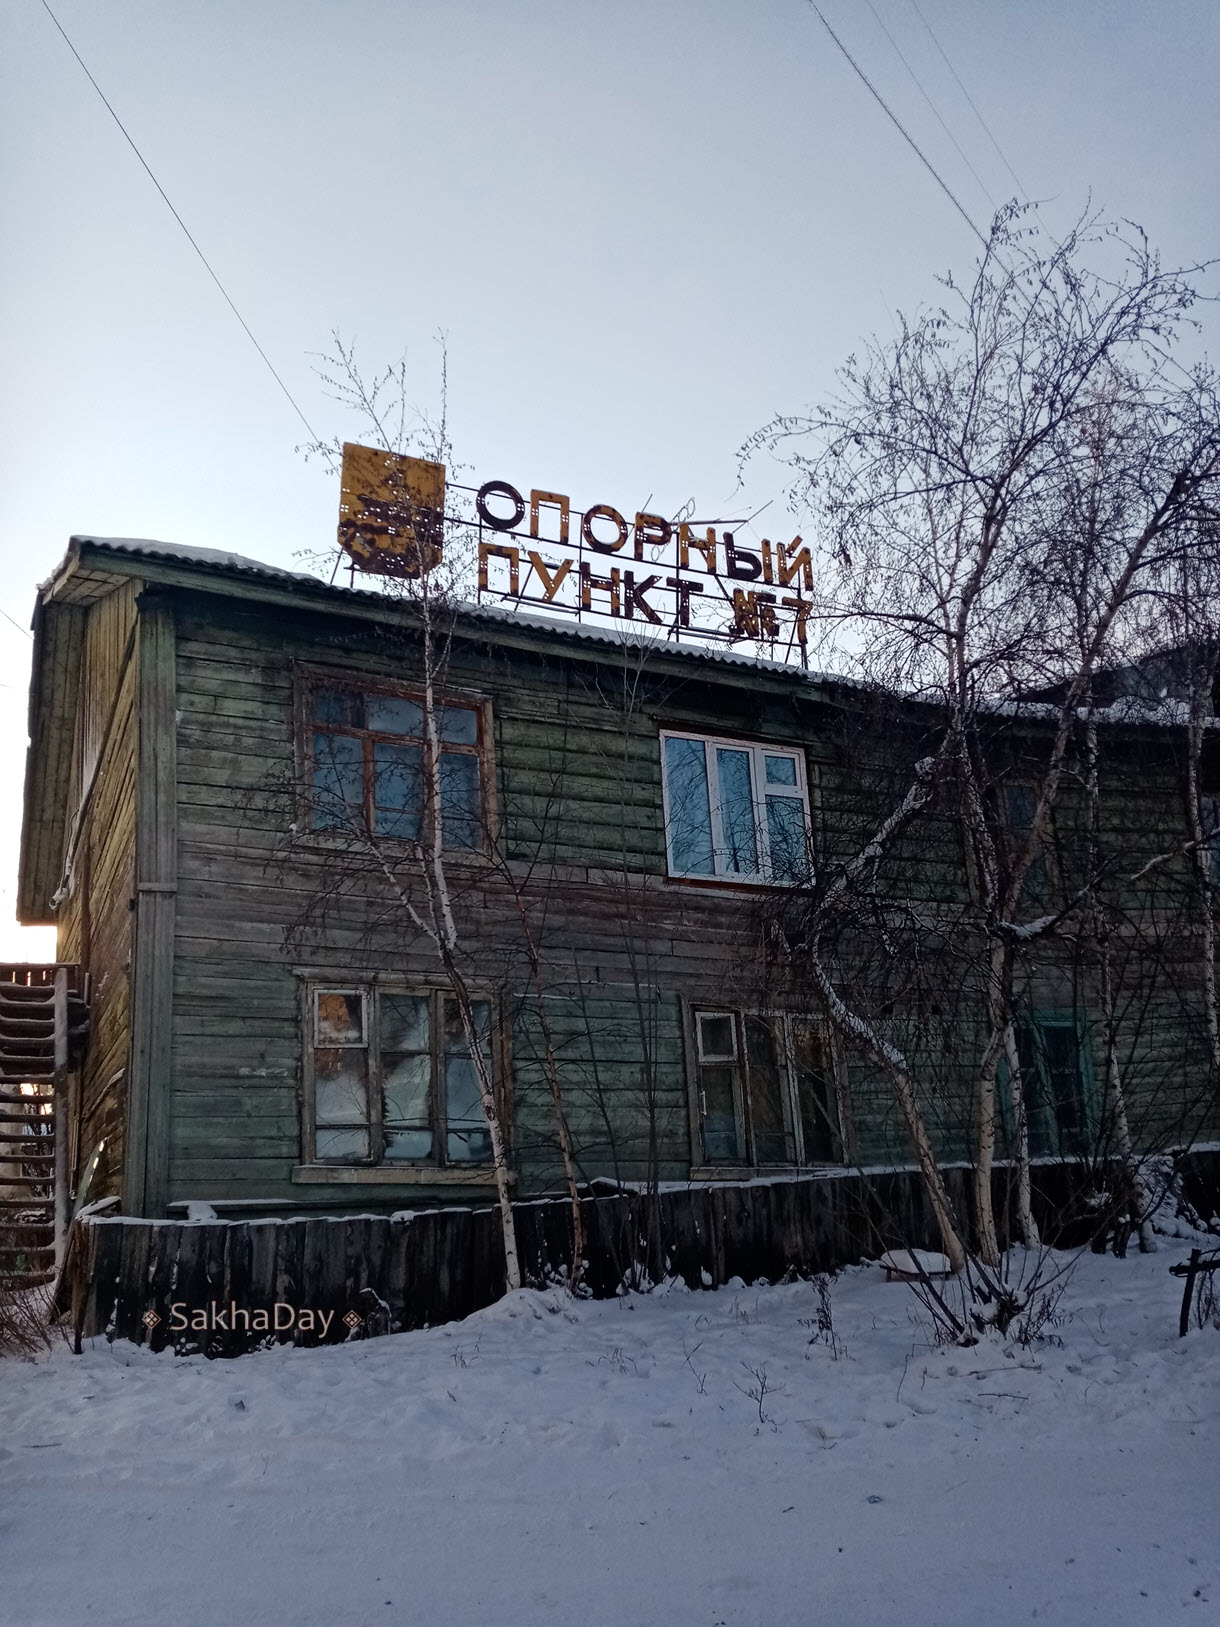 Якутск - приметы прошлого: списки жильцов, колючая проволока, опорный пункт, газировка